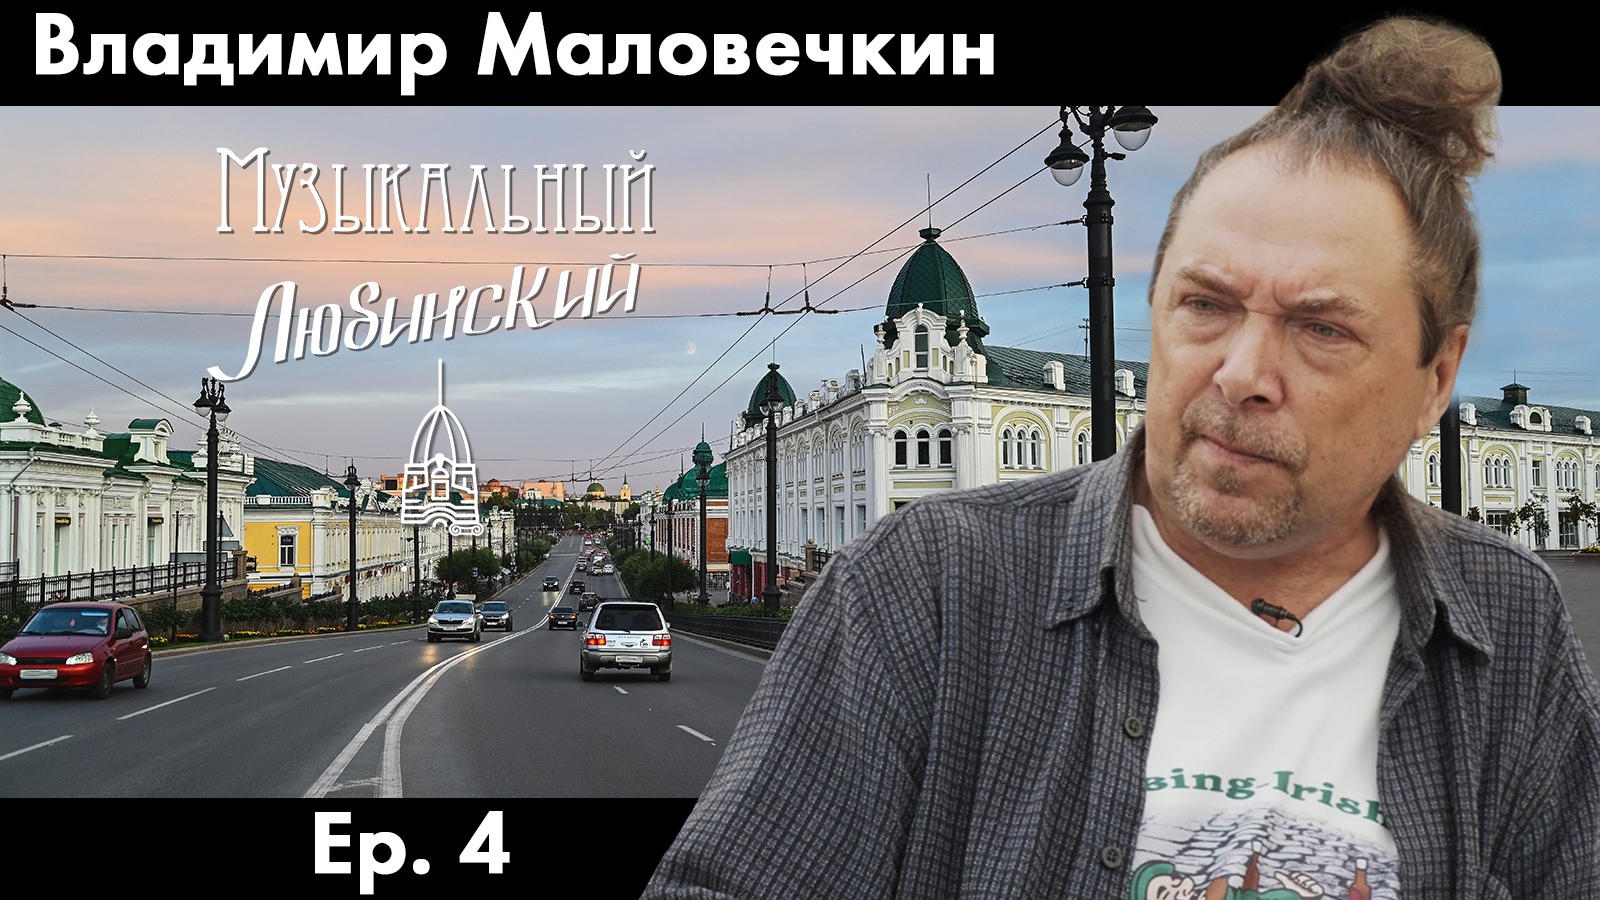 Владимир Маловечкин | Ep. 4 | Музыкальный Любинский